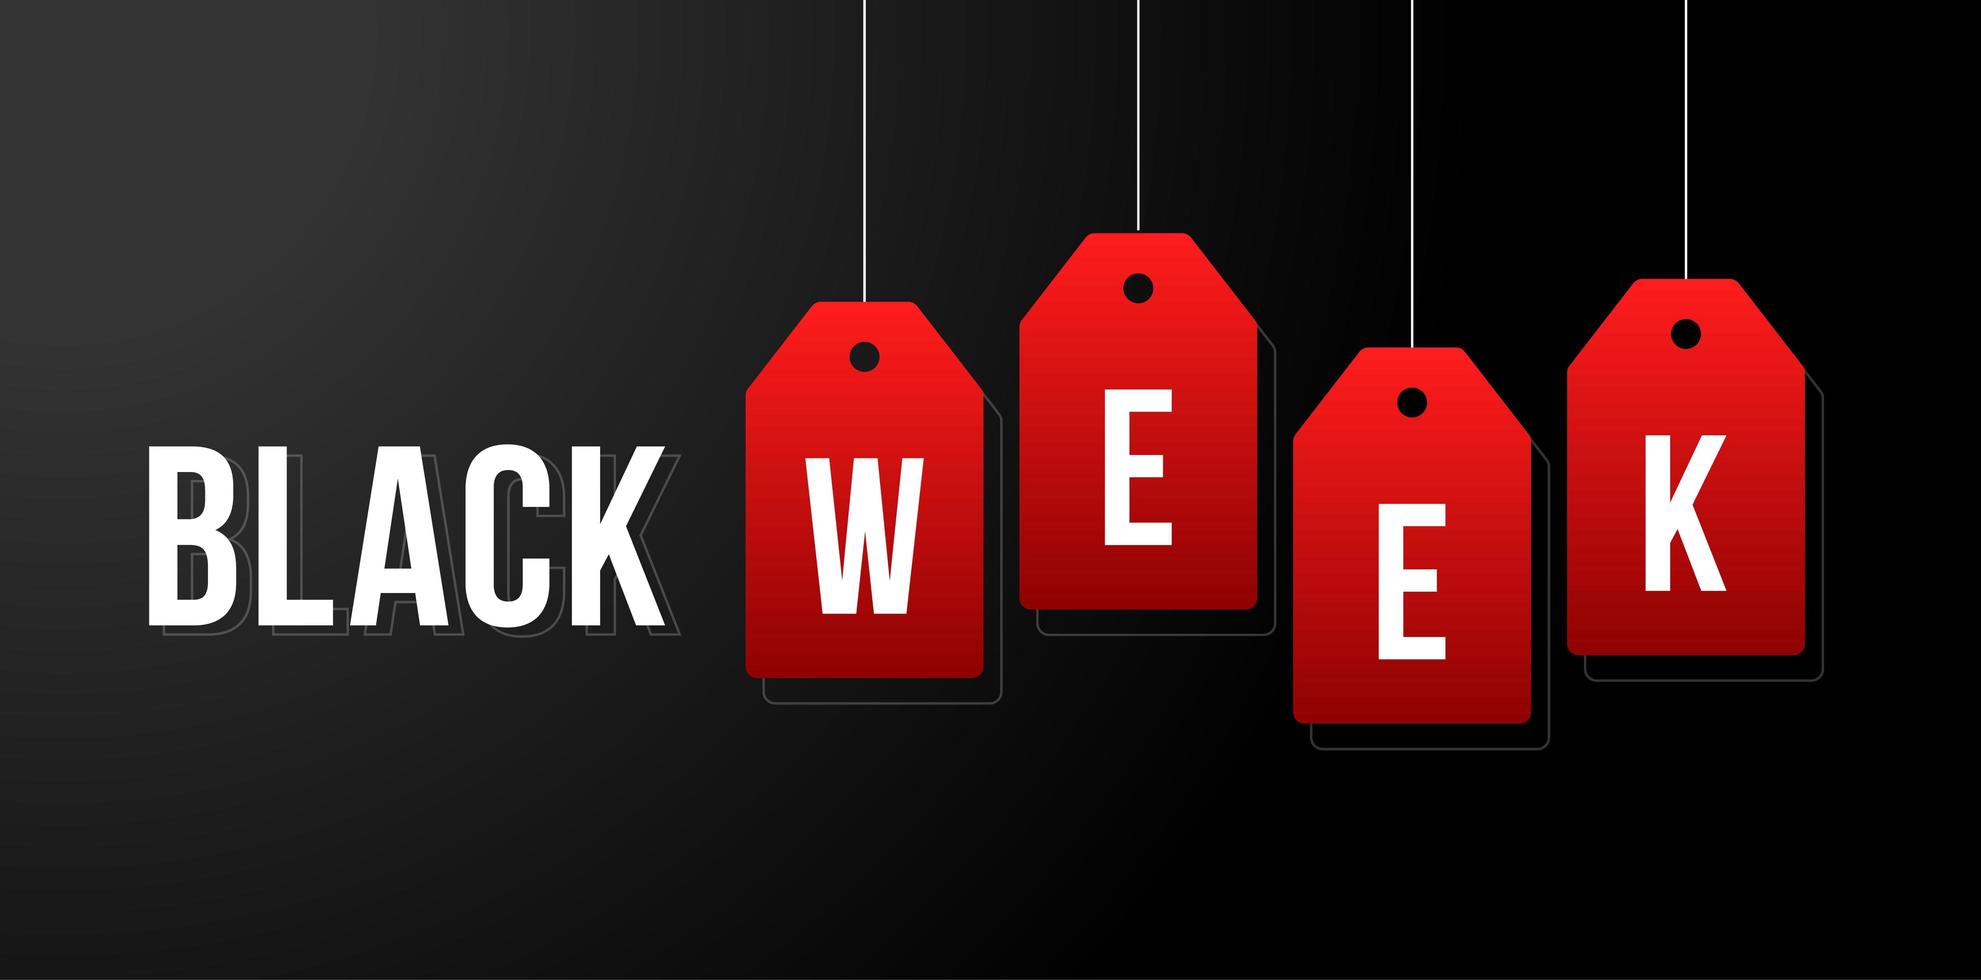 schwarze Woche Vektor-Illustration. schwarze Woche Verkauf weiße Tags Werbung auf schwarzem Hintergrund Vektor-Illustration vektor